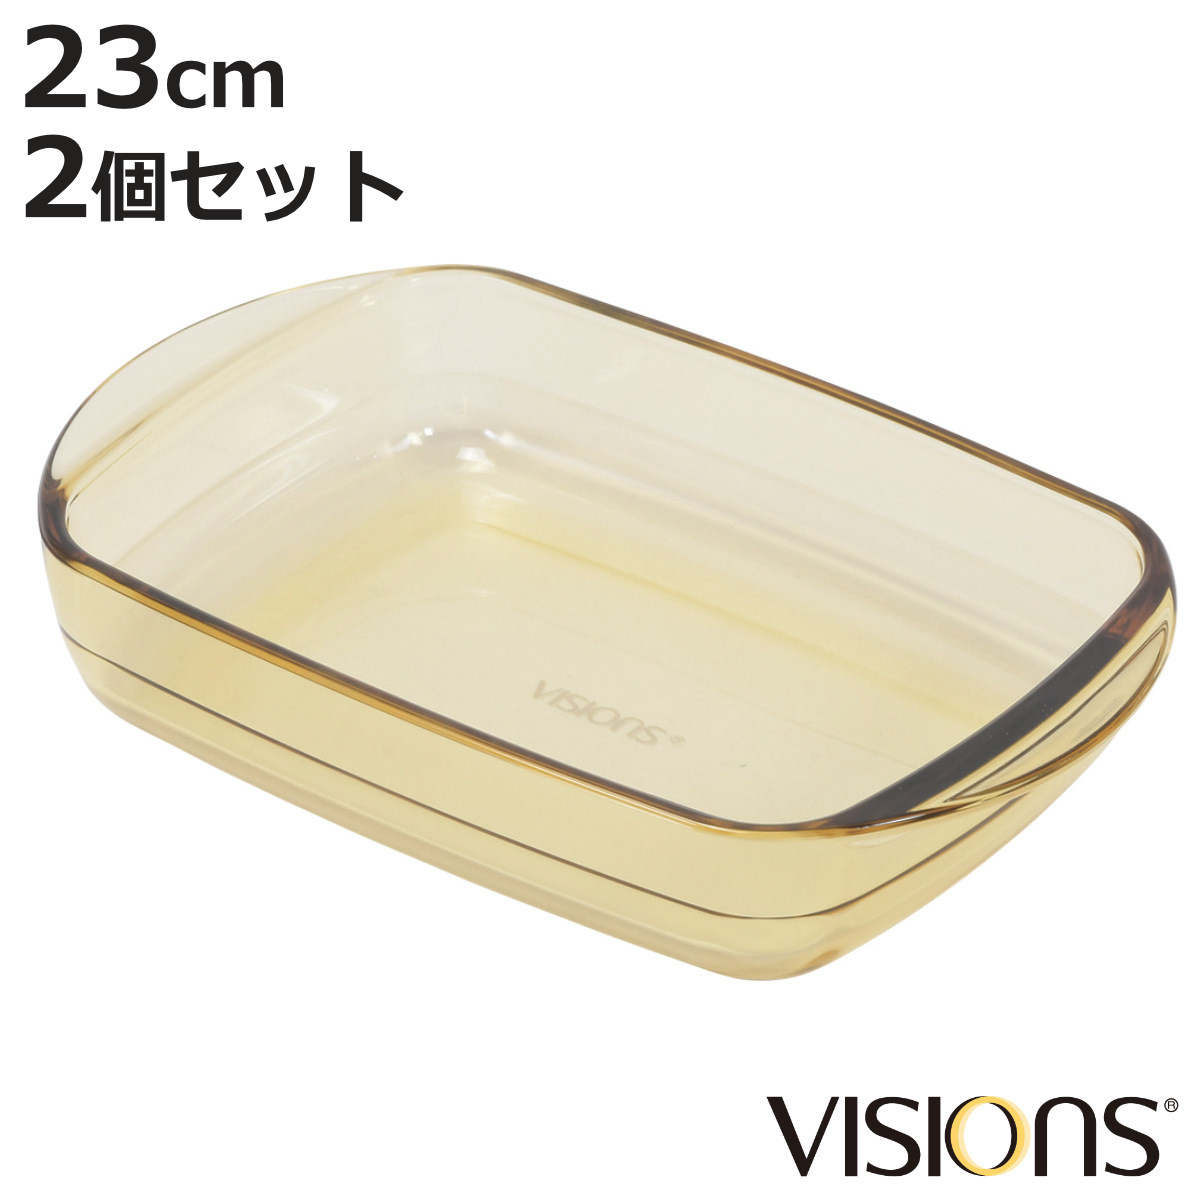 グラタン皿 23cm VISIONS 耐熱ガラス 2個セット （ 食洗機対応 電子レンジ対応 オーブン対応 耐熱皿 オーブンウェア 食器 皿 グラタン ラ